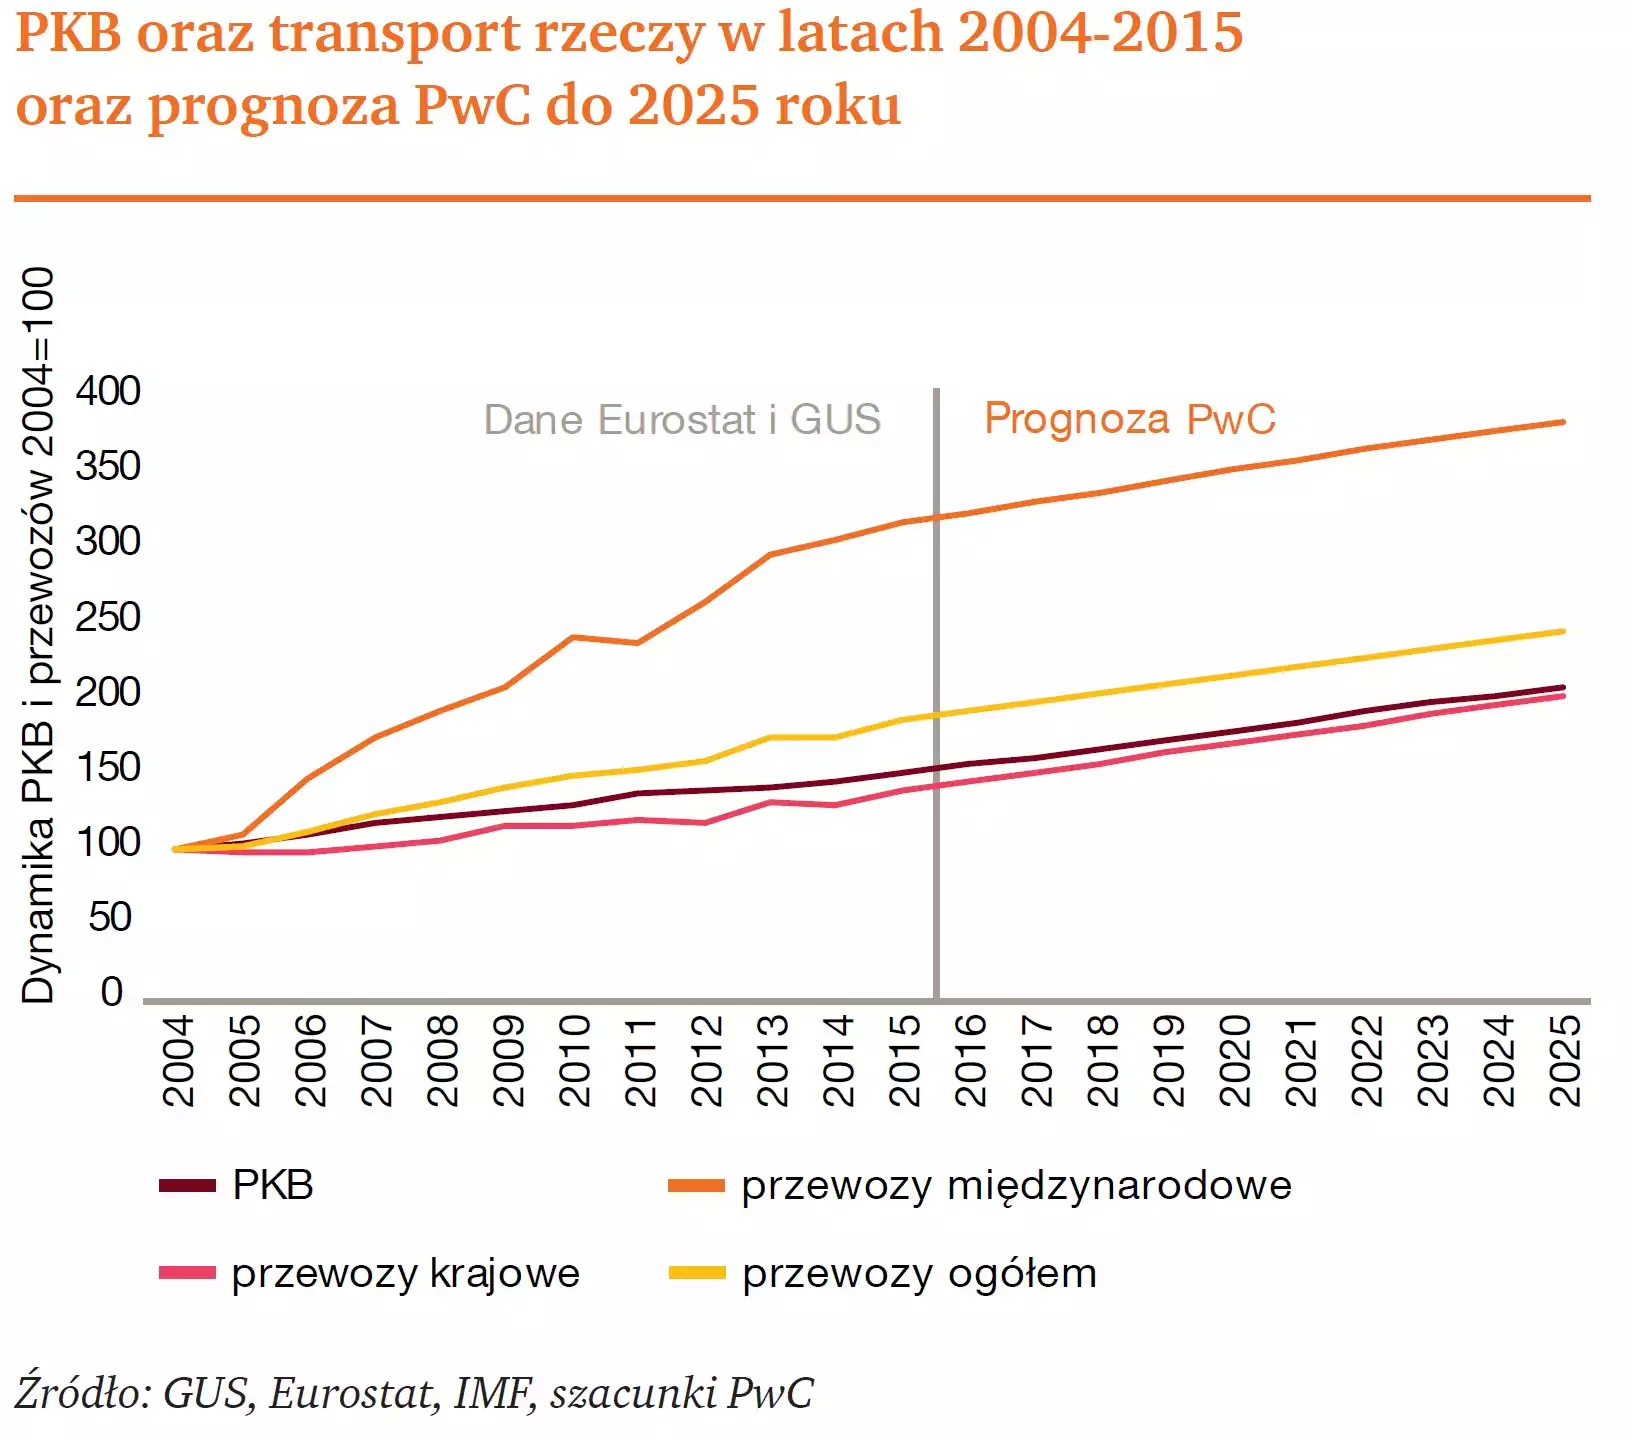 Transport rzeczy w latach 2004-2015 - wykres